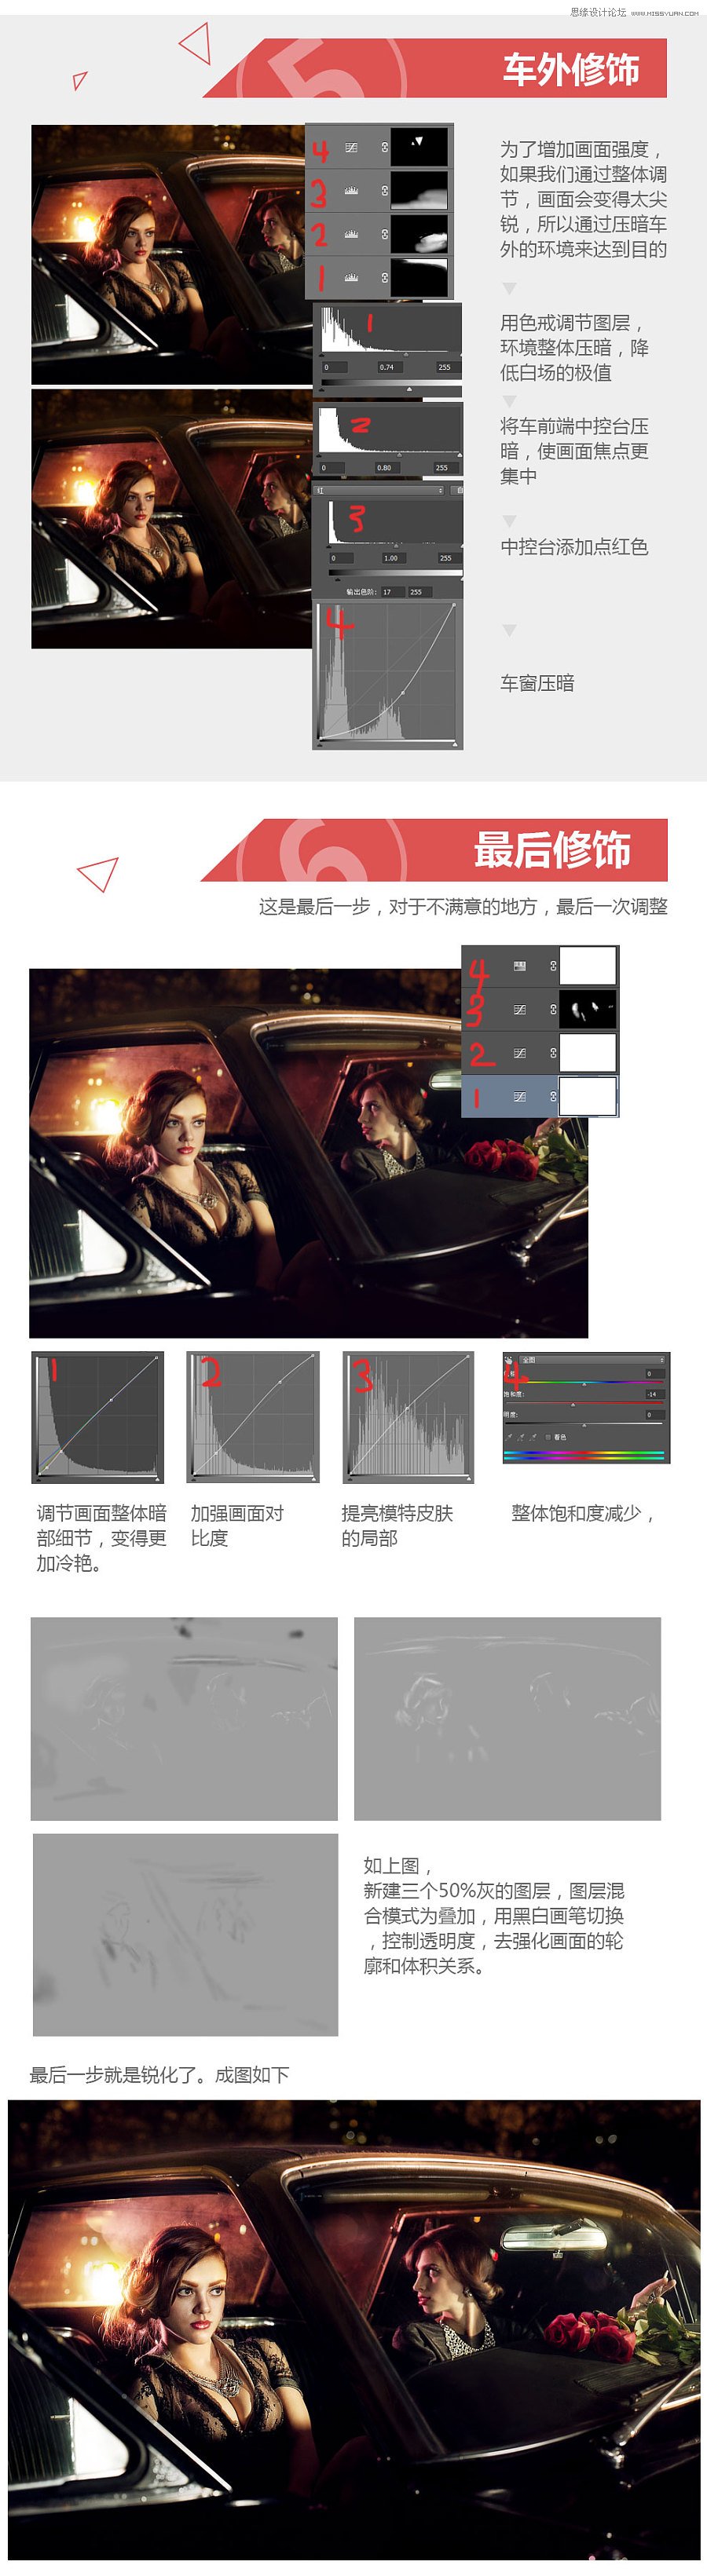 Photoshop给汽车内美女增加金属质感肤色,PS教程,素材中国网